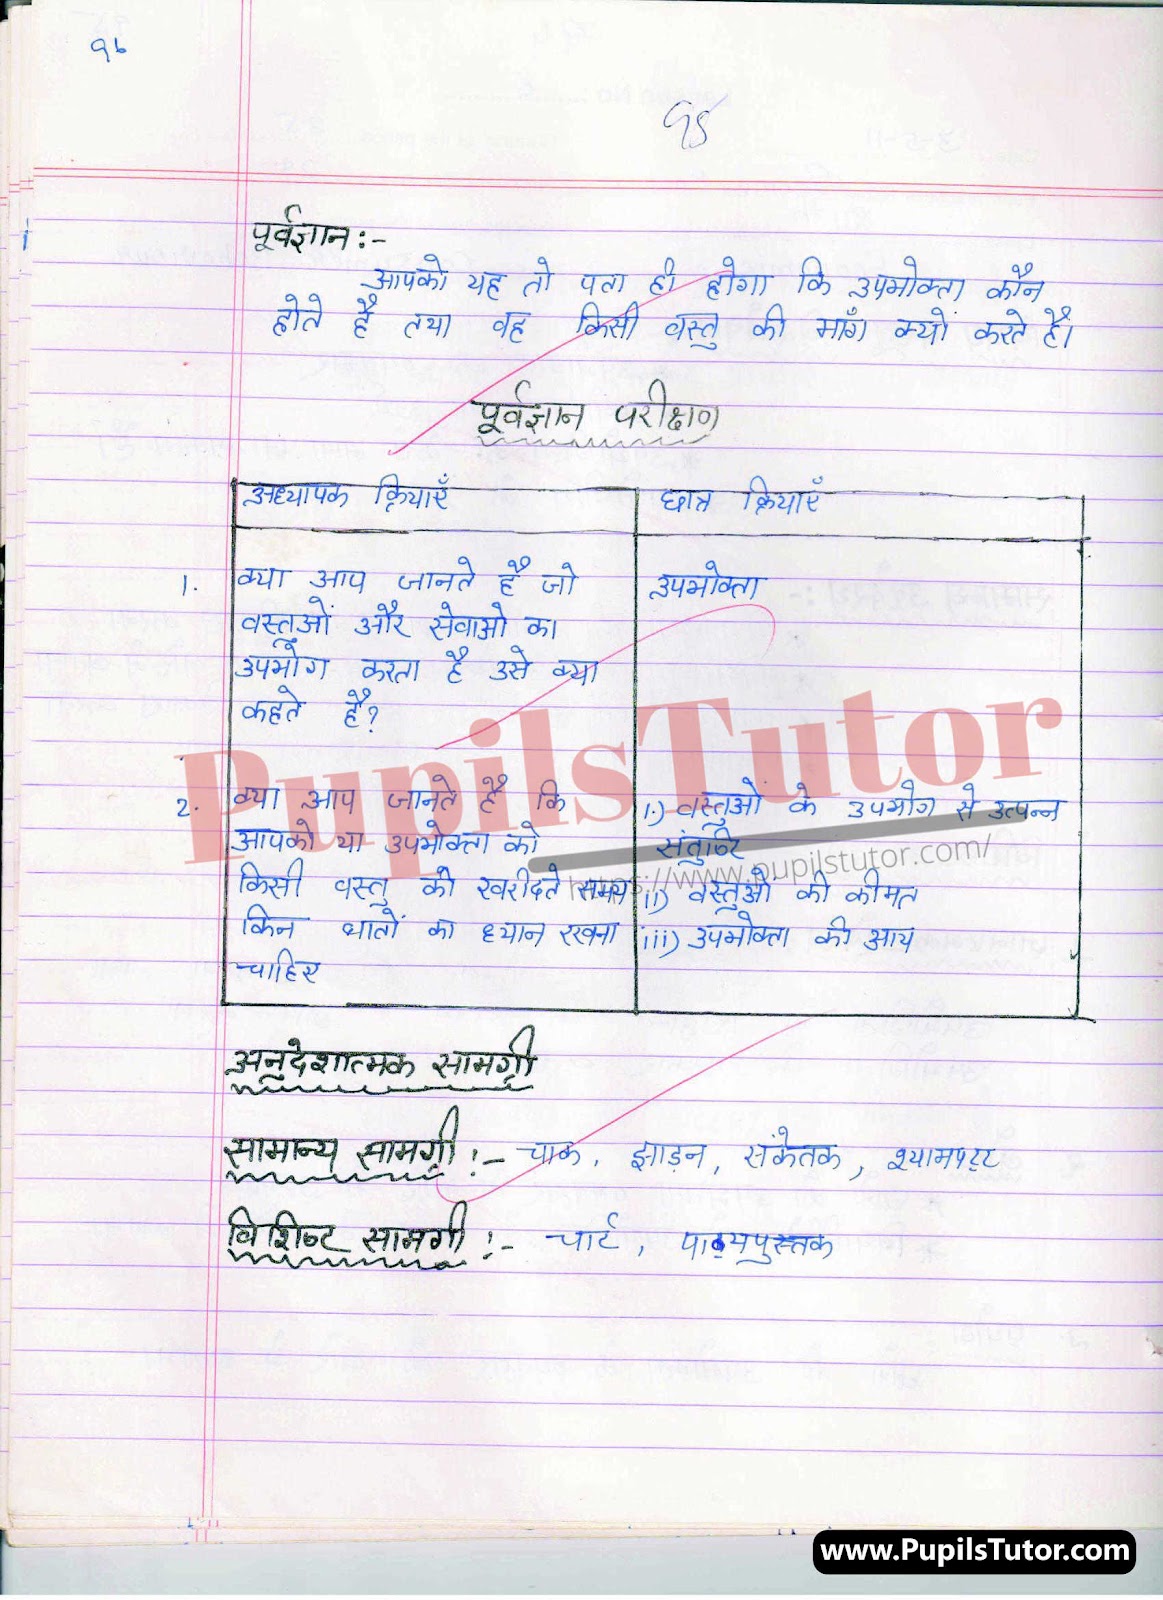 Macro And Real School Teaching Practice Skill Upbhokta Ka Vyavhar Lesson Plan For B.Ed And Deled In Hindi Free Download PDF And PPT (Power Point Presentation And Slides) | बीएड और डीएलएड के लिए मैक्रो और रियल स्कूल शिक्षण कौशल पर उपभोगता का व्यवहार कक्षा 11, 12 के लेसन प्लान की पीडीऍफ़ और पीपीटी फ्री में डाउनलोड करे| – (Page And PDF Number 2) – pupilstutor